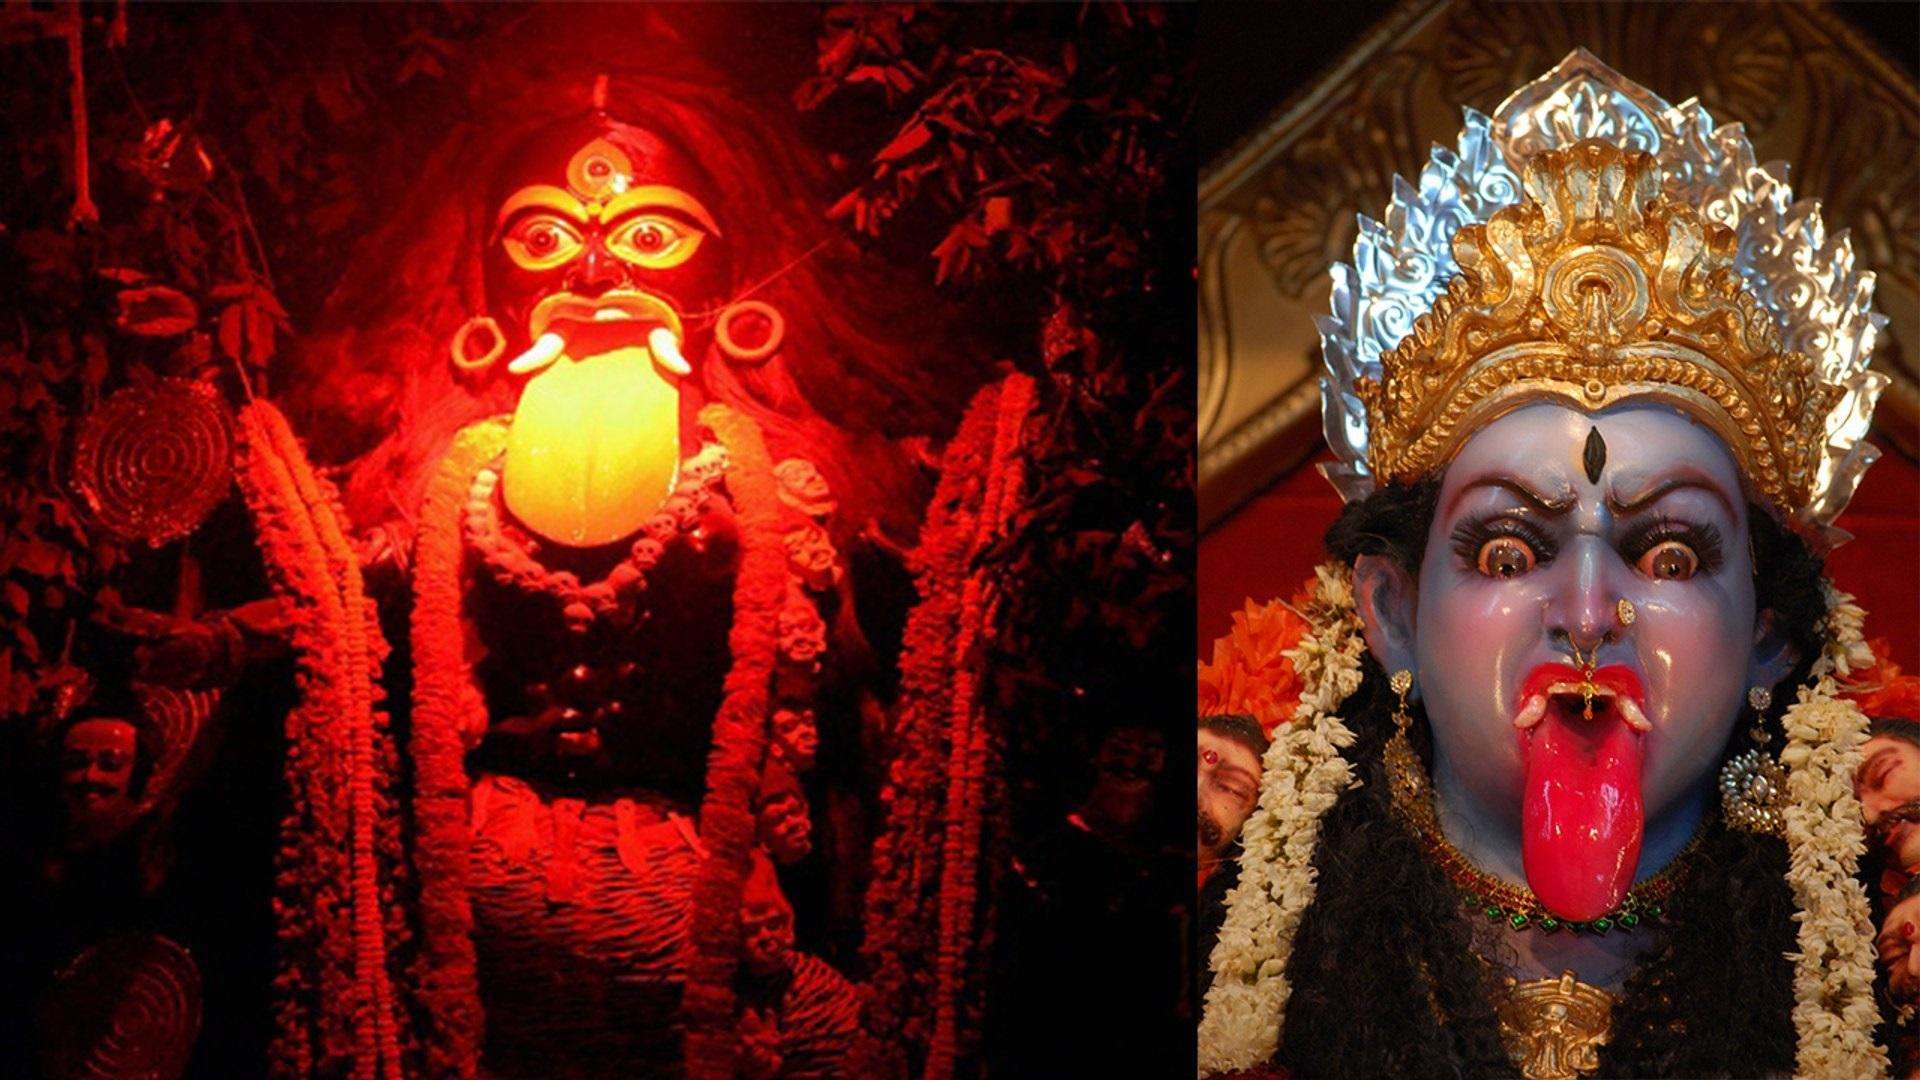 Chaitra navratri: कल आश्विन नक्षत्र और चंद्रमा मेष राशि में, बढ़ेगी चैत्र नवरात्रि की शुभता